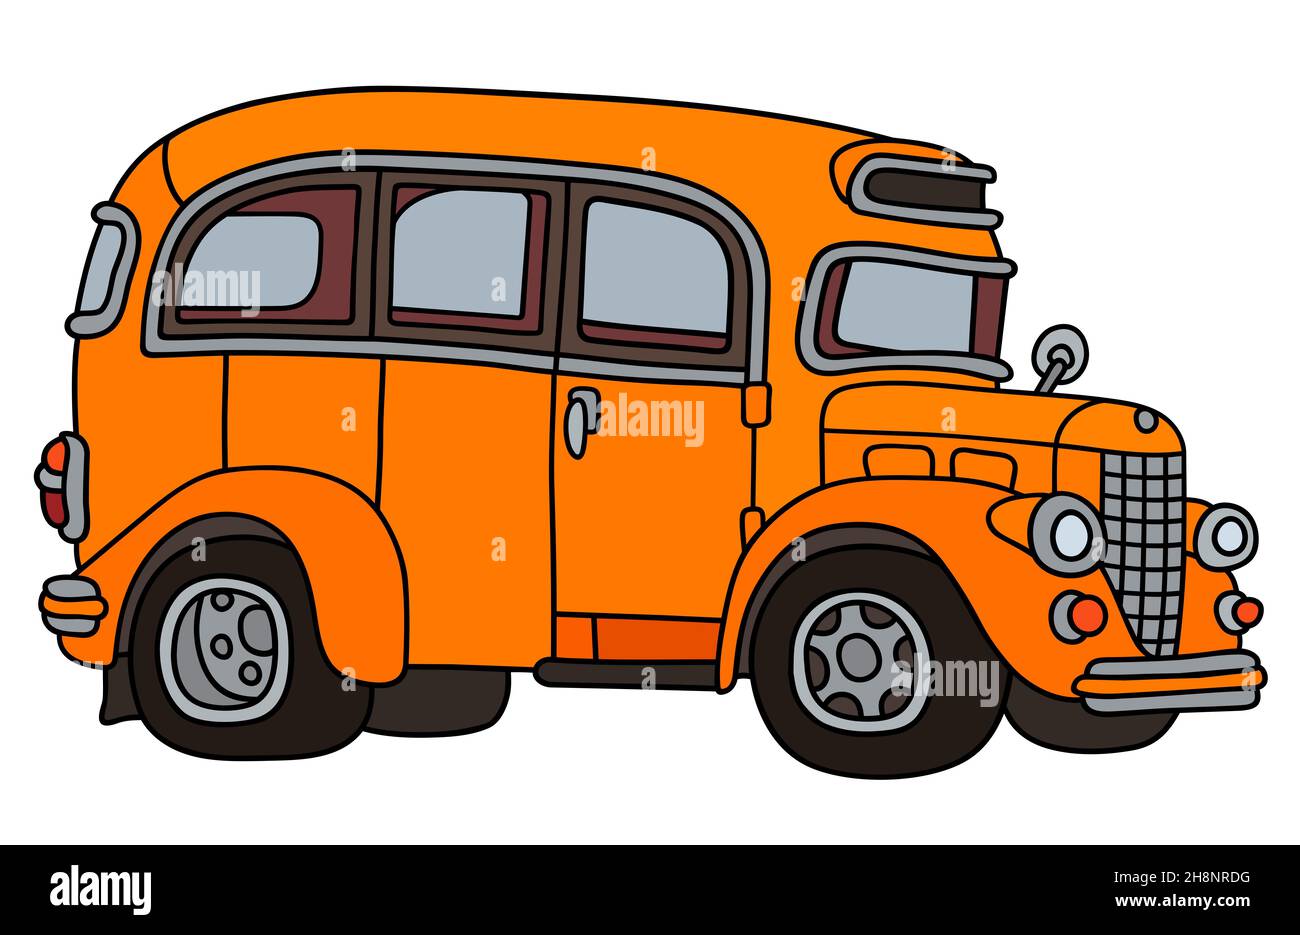 Disegno a mano di un autobus arancione d'epoca Foto Stock